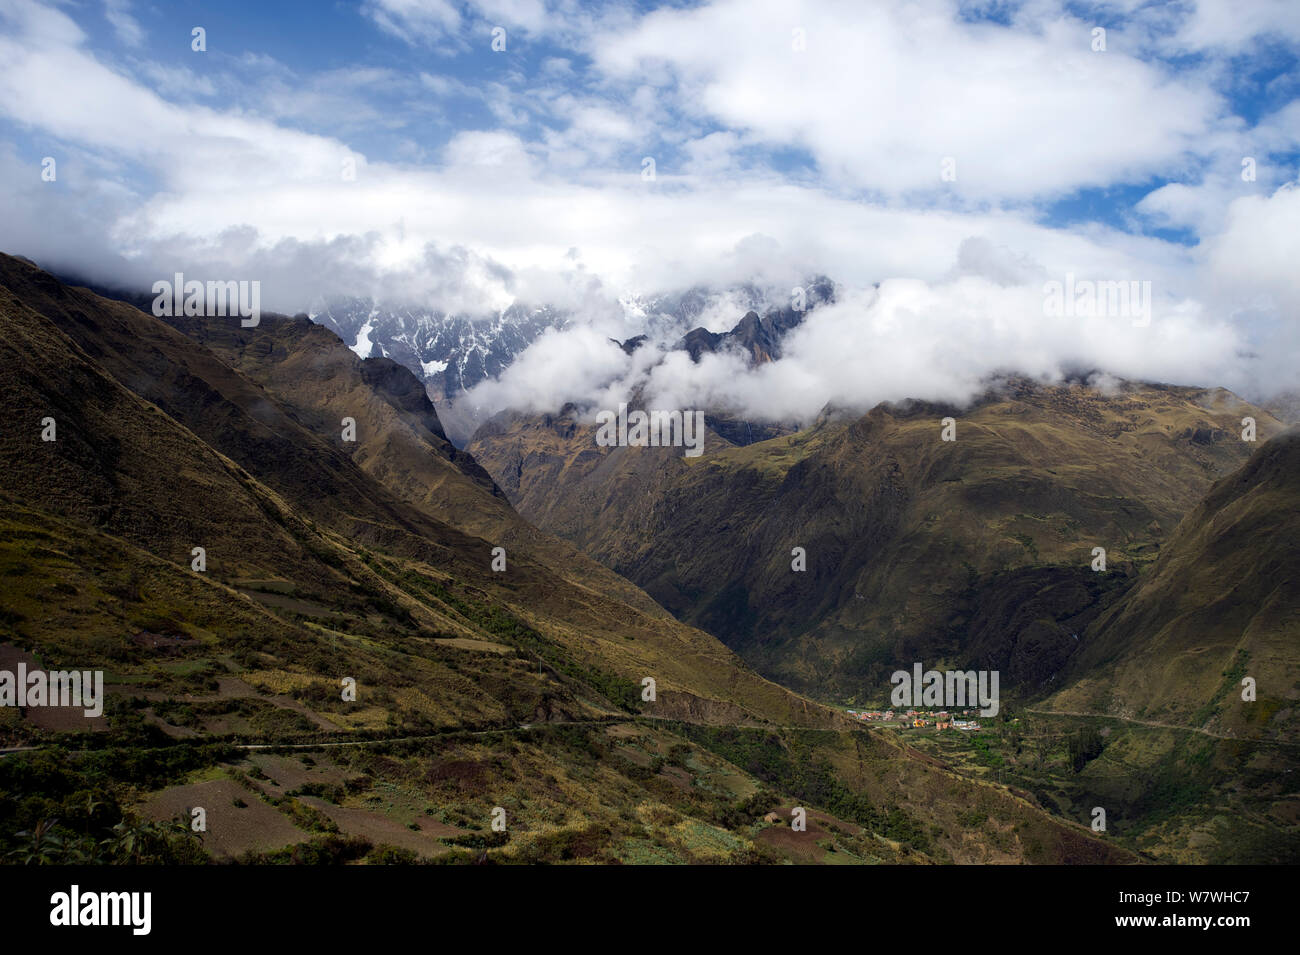 Il villaggio Totoral con montagna Illimani parzialmente oscurata da nuvole in lontananza, alto Ande, Bolivia, ottobre 2013. Foto Stock